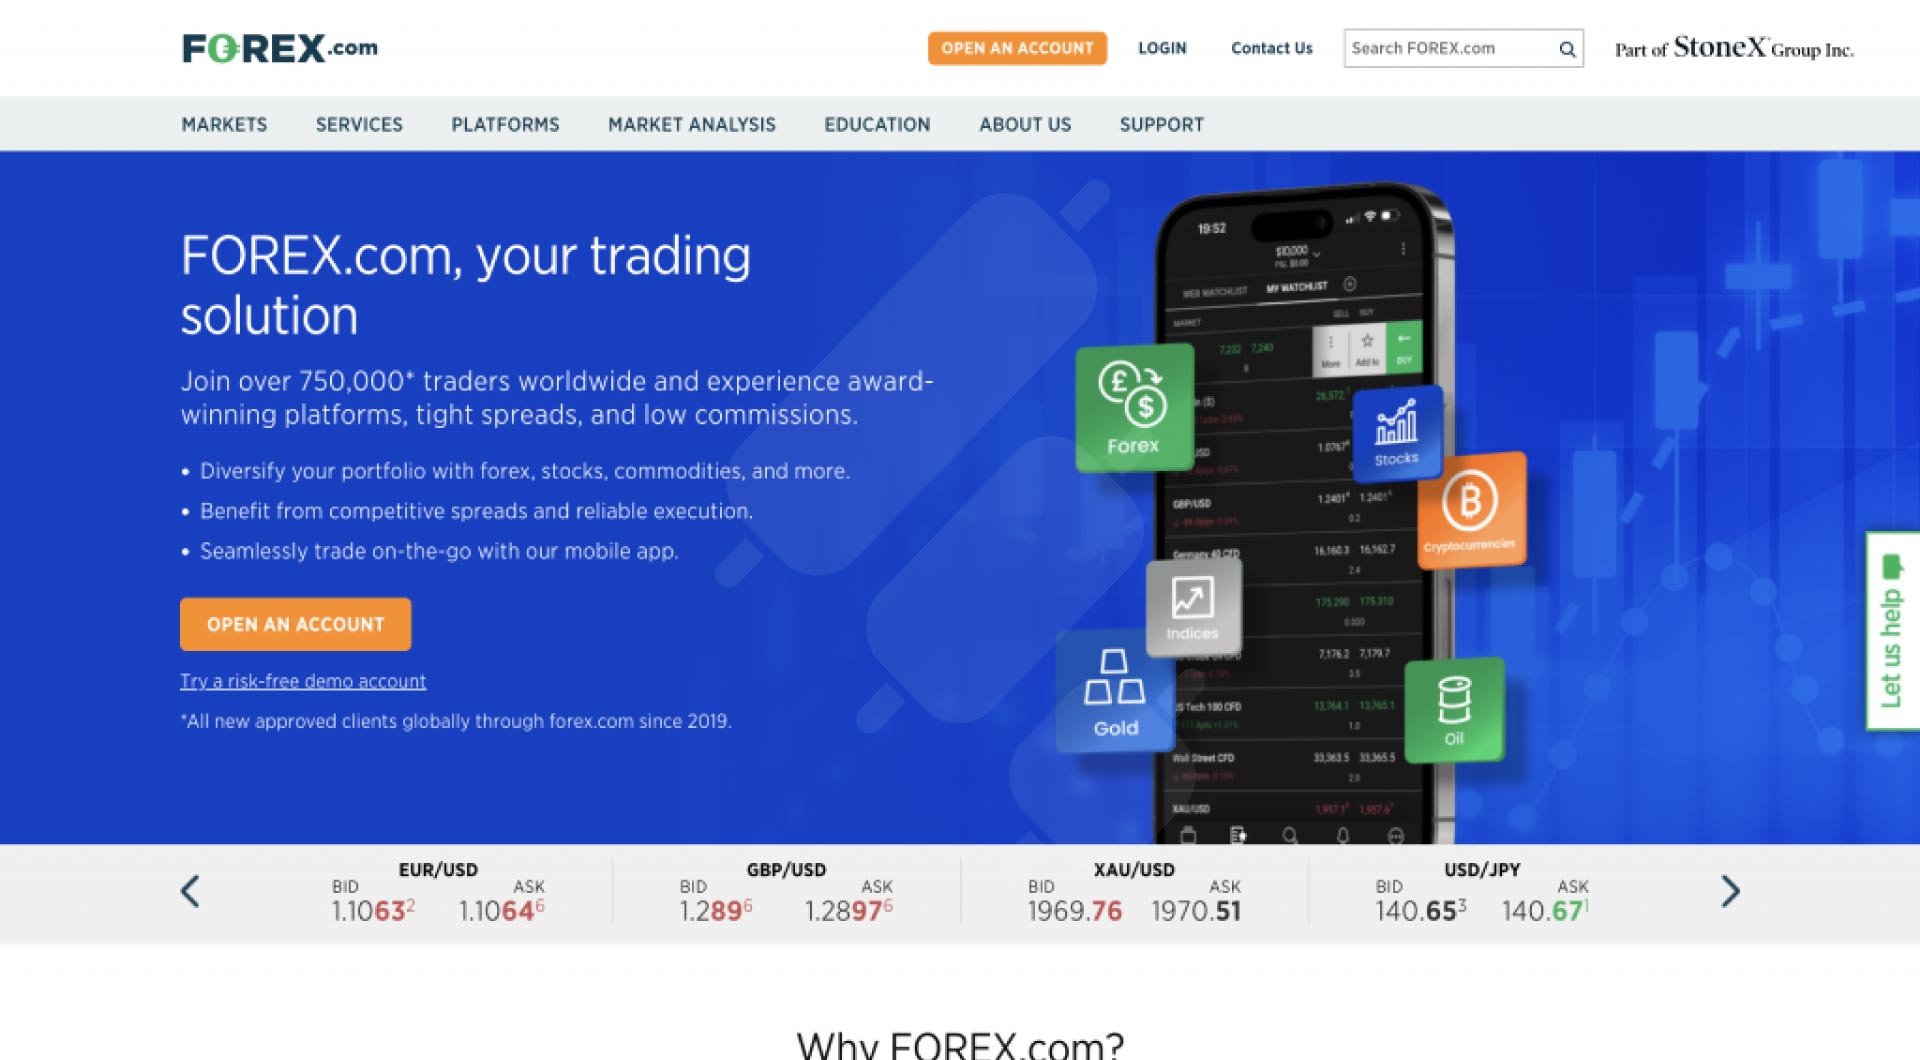 Forex.com platform